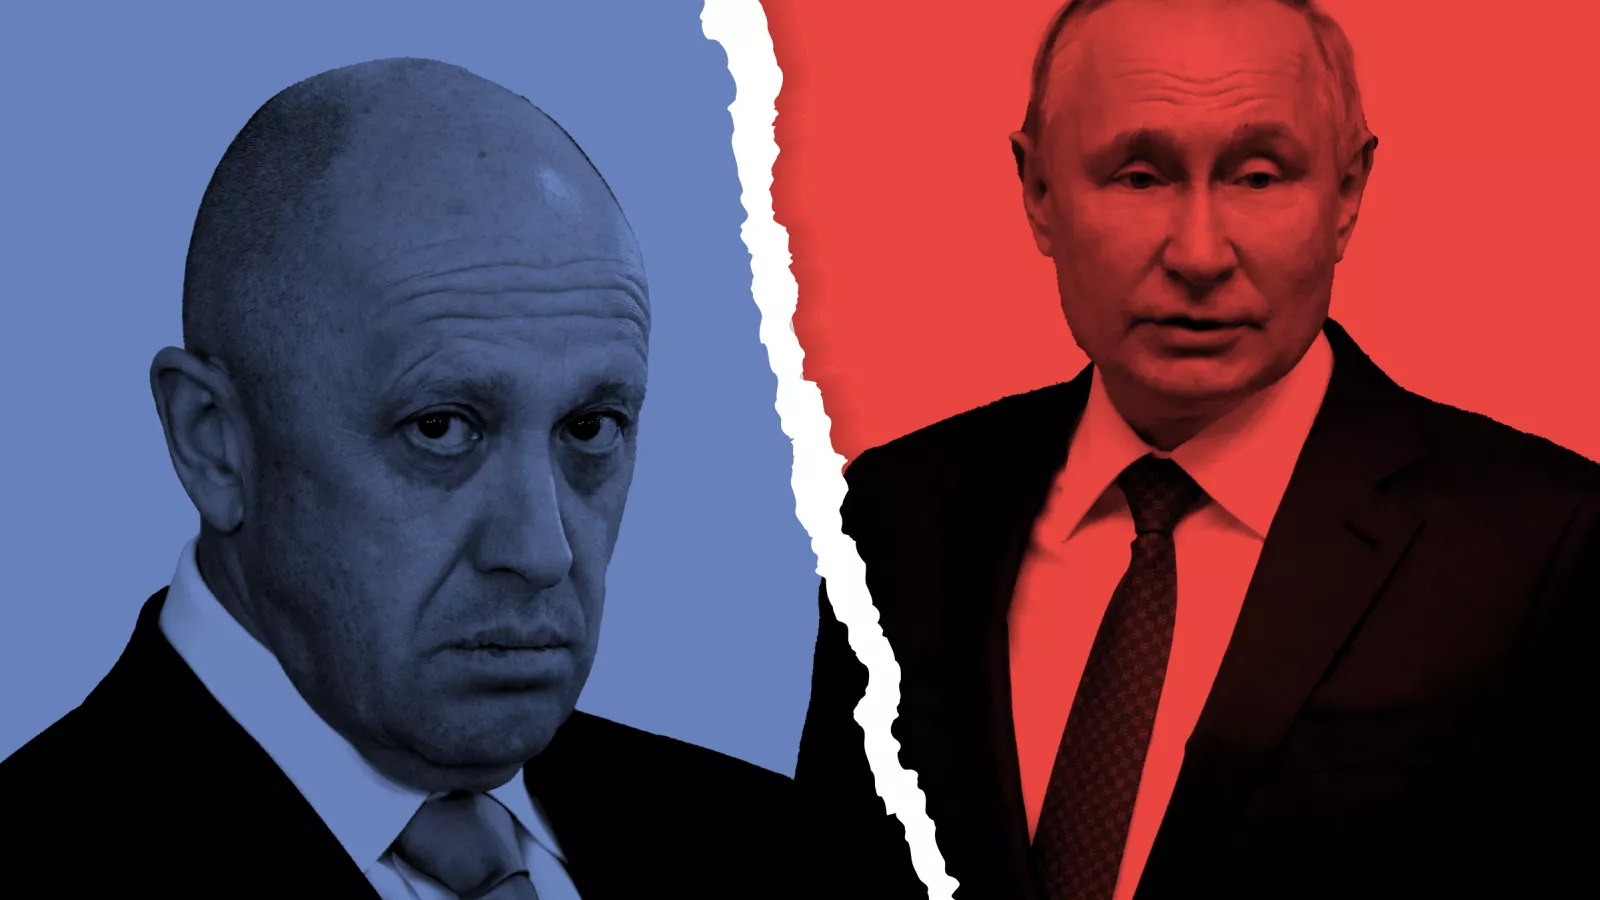 Putin may Lose his Iron Grip on Power as Rebellion Strikes